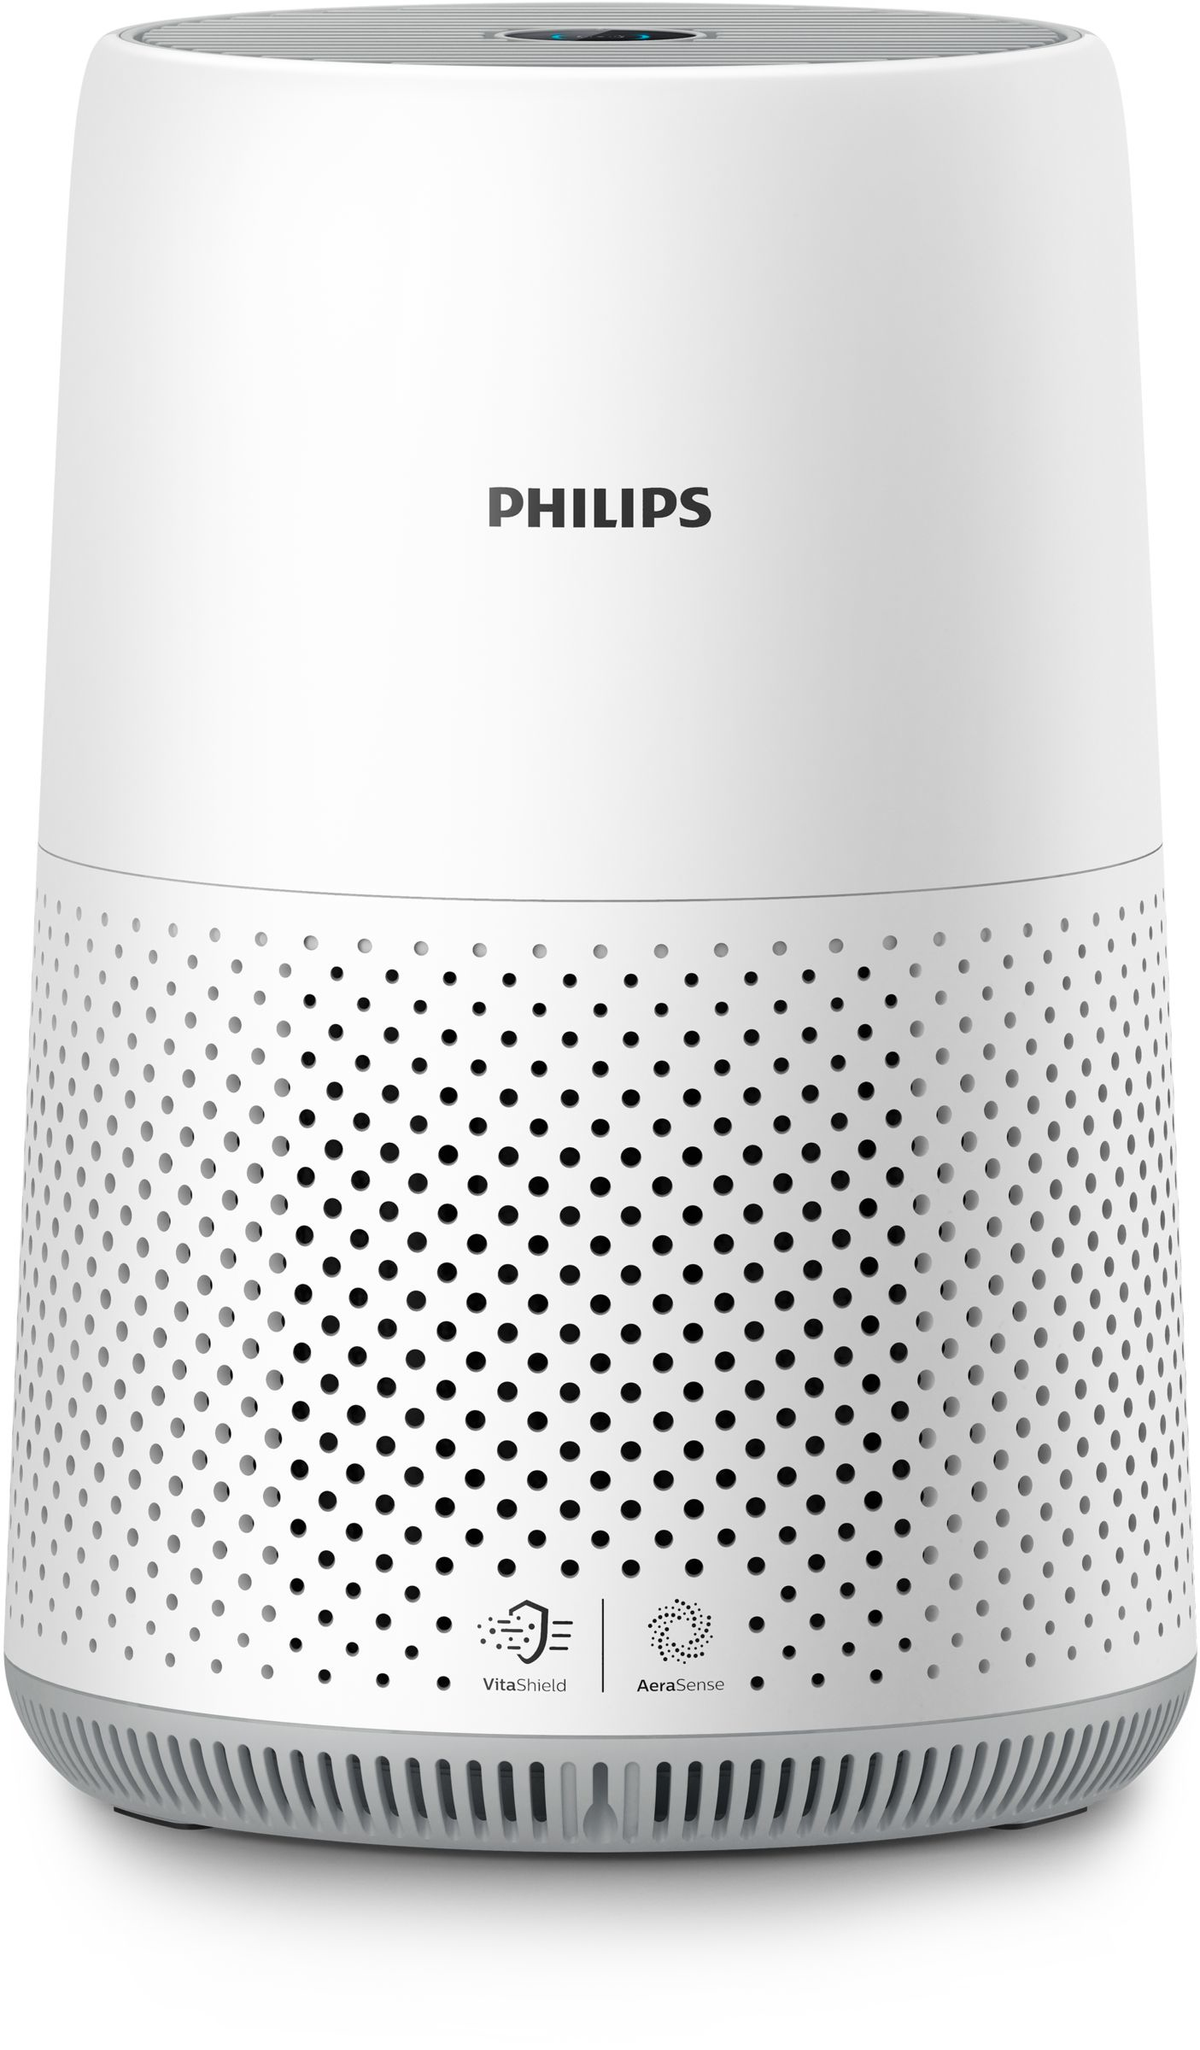 Philips PHILIPS Purifier series Bianco (22 Watt) 800 AC0819/10 Luftreiniger